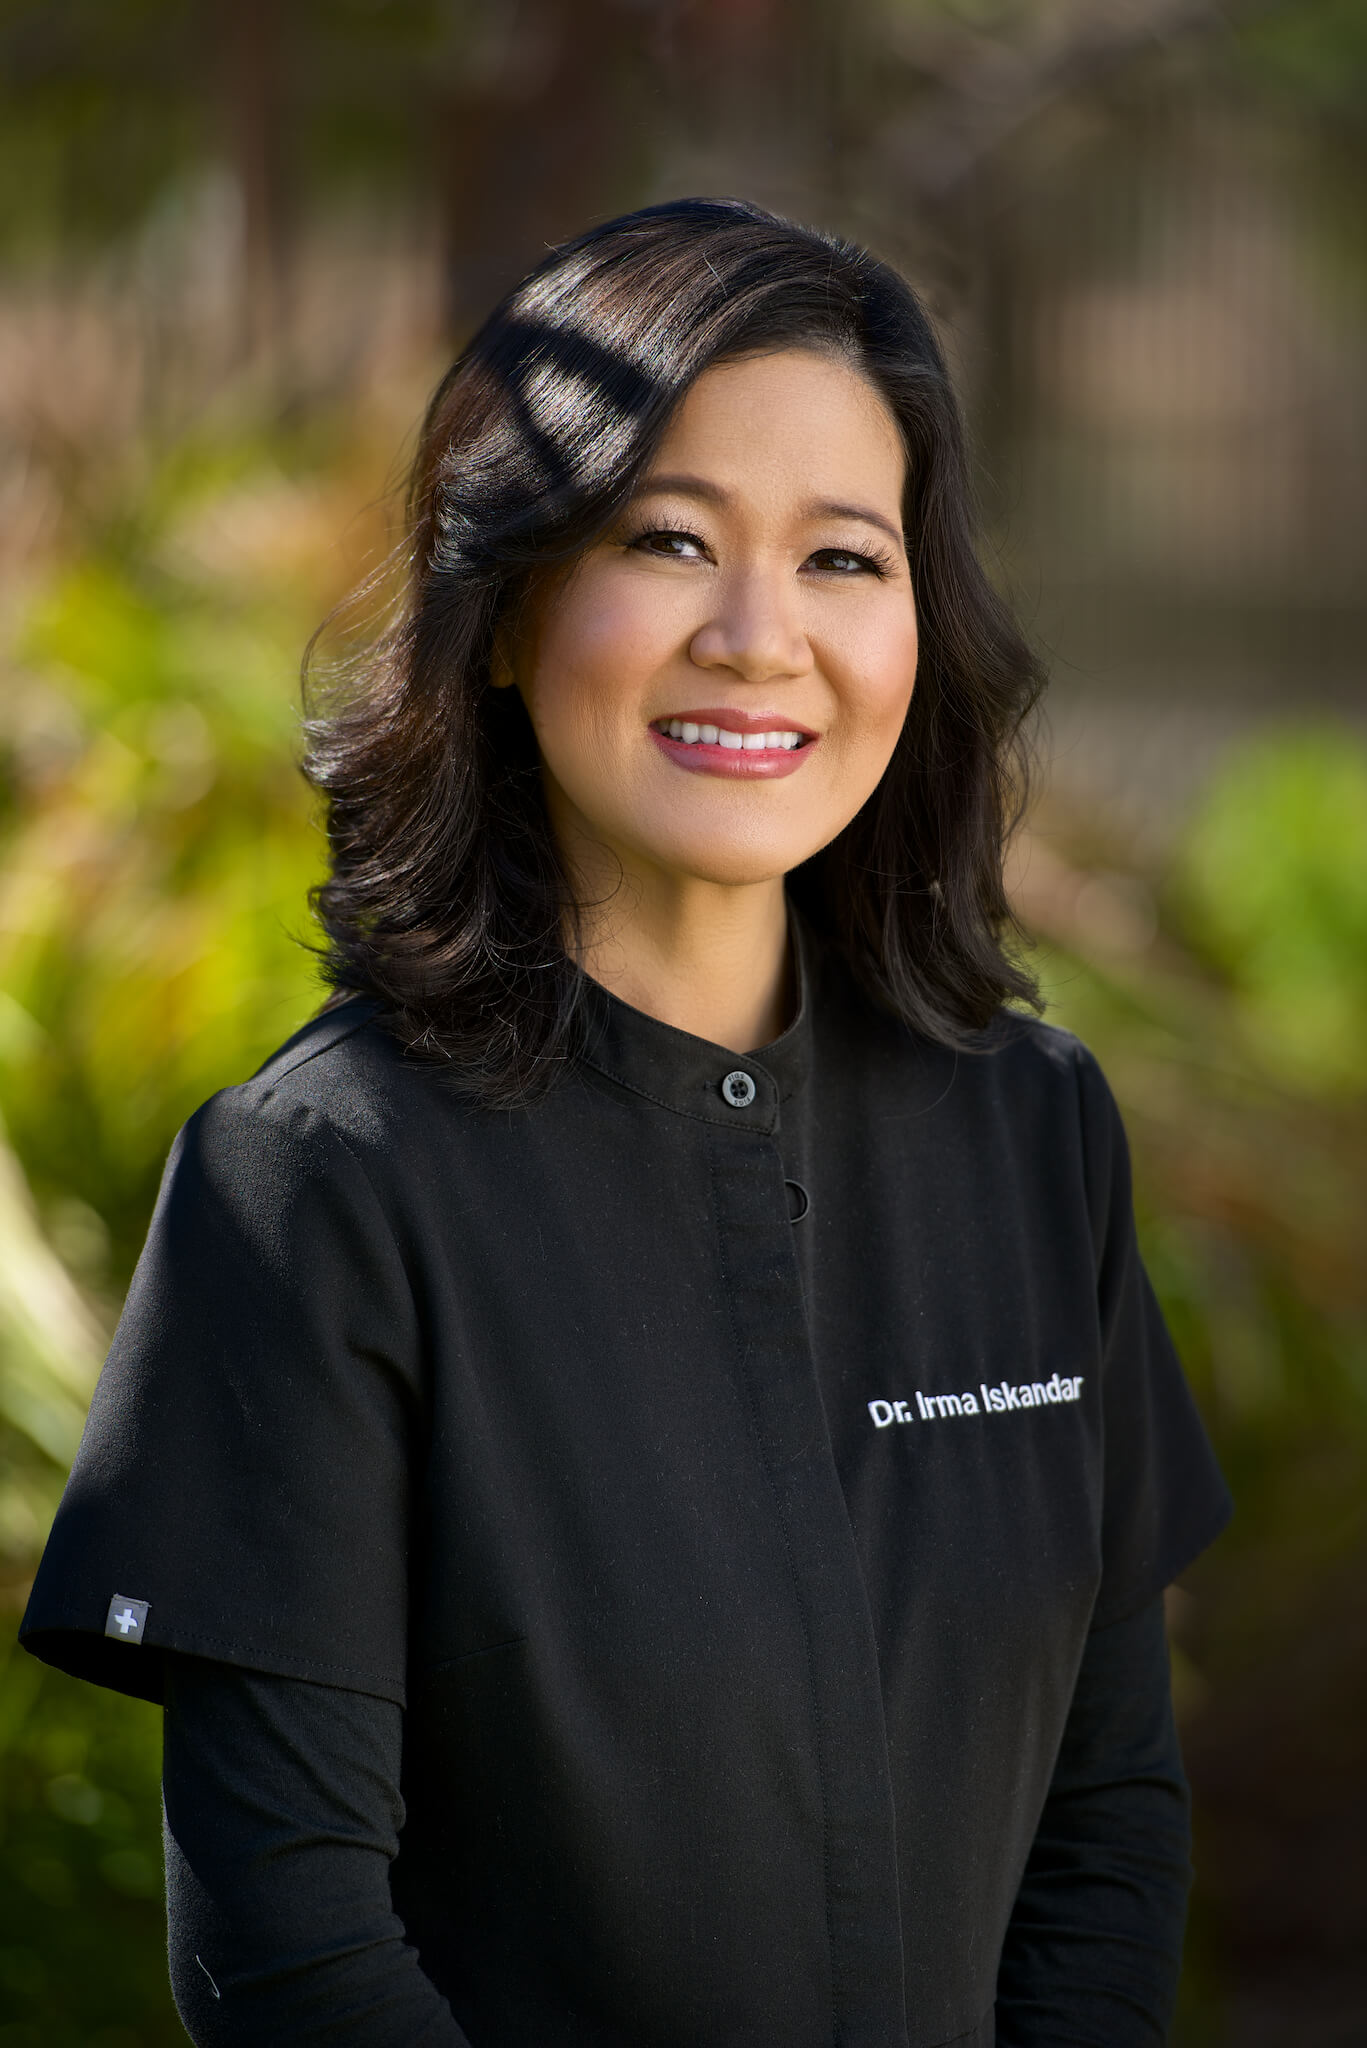 Meet Dr. Irma Iskandar